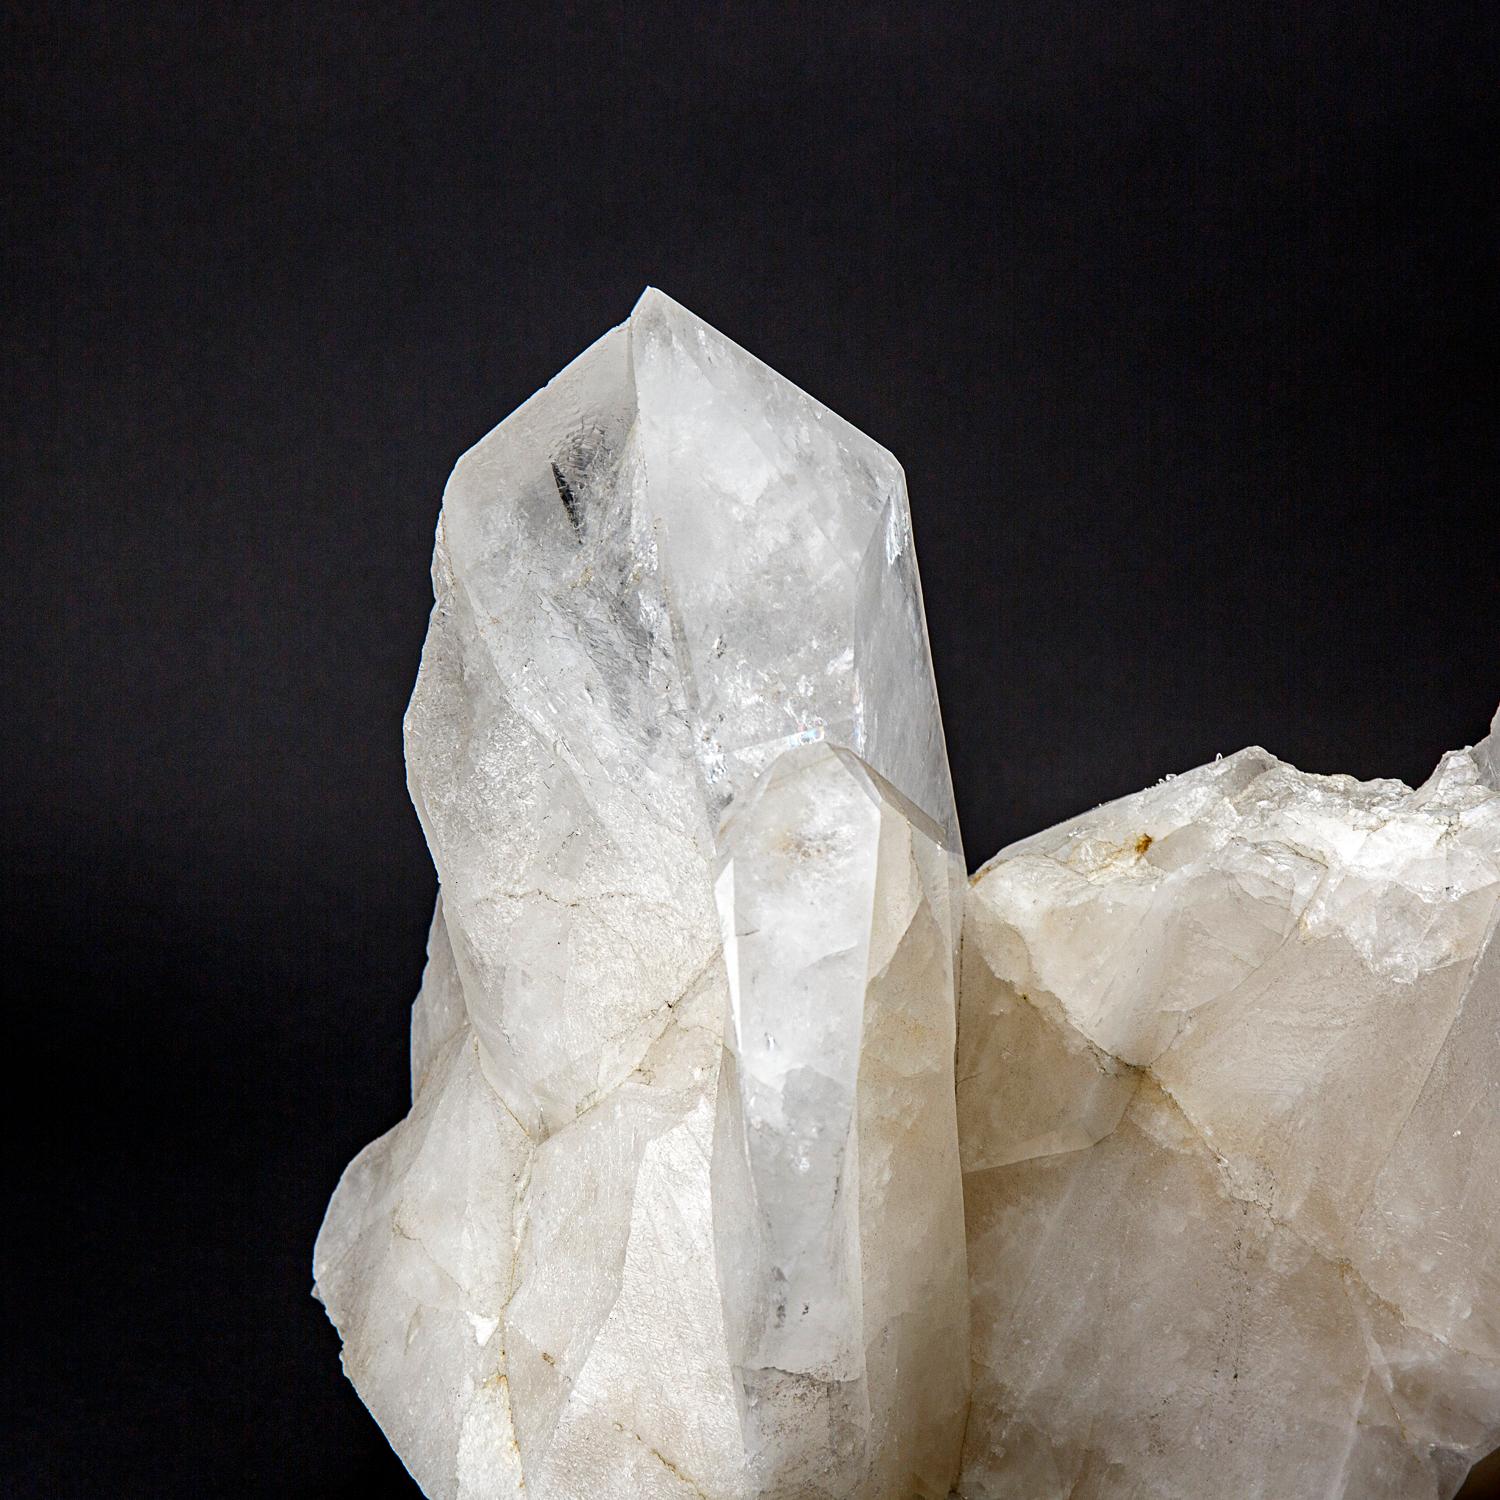 Dieser echte klare Quarzkristall Cluster Point aus Brasilien wiegt 84 Pfund und ist aus hochwertigen klaren Quarzkristallen gefertigt. Mit einem vollständigen Abschluss und einer glänzenden, reflektierenden Oberfläche eignet sich dieser Kristall